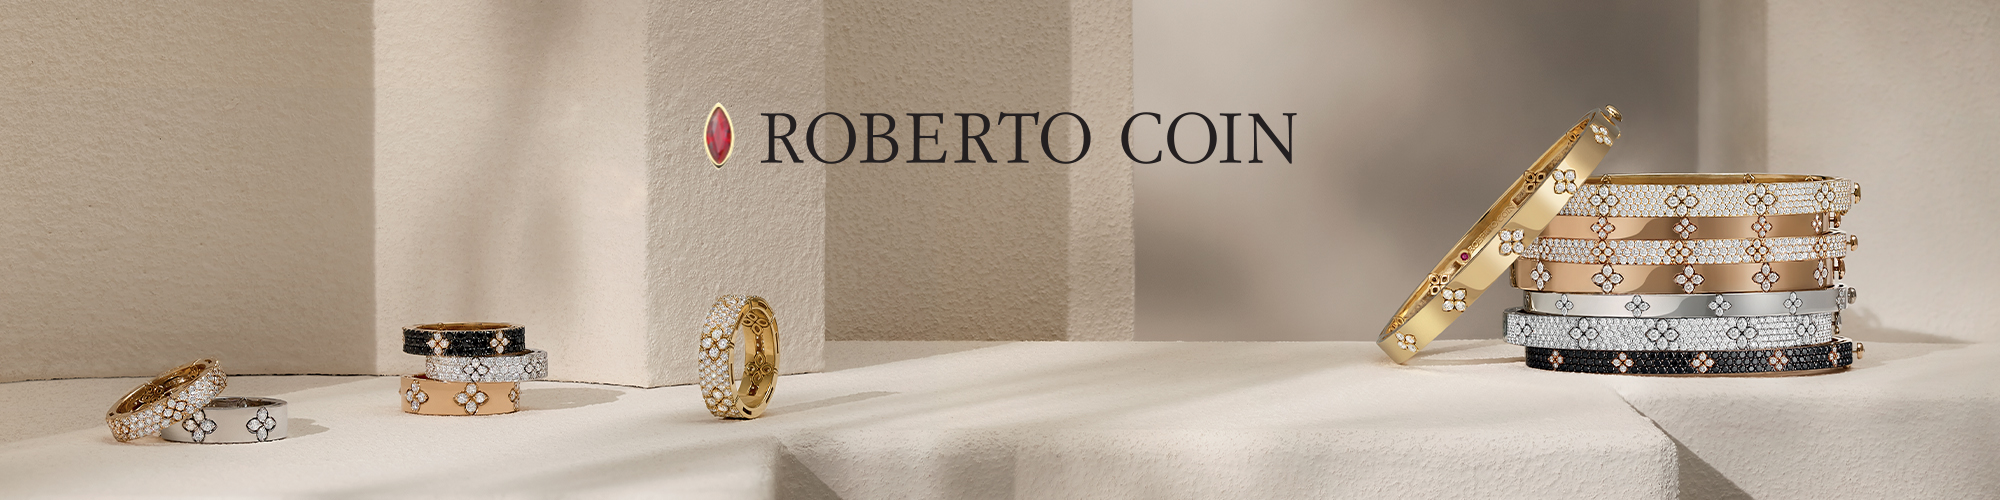 Roberto Coin Banner